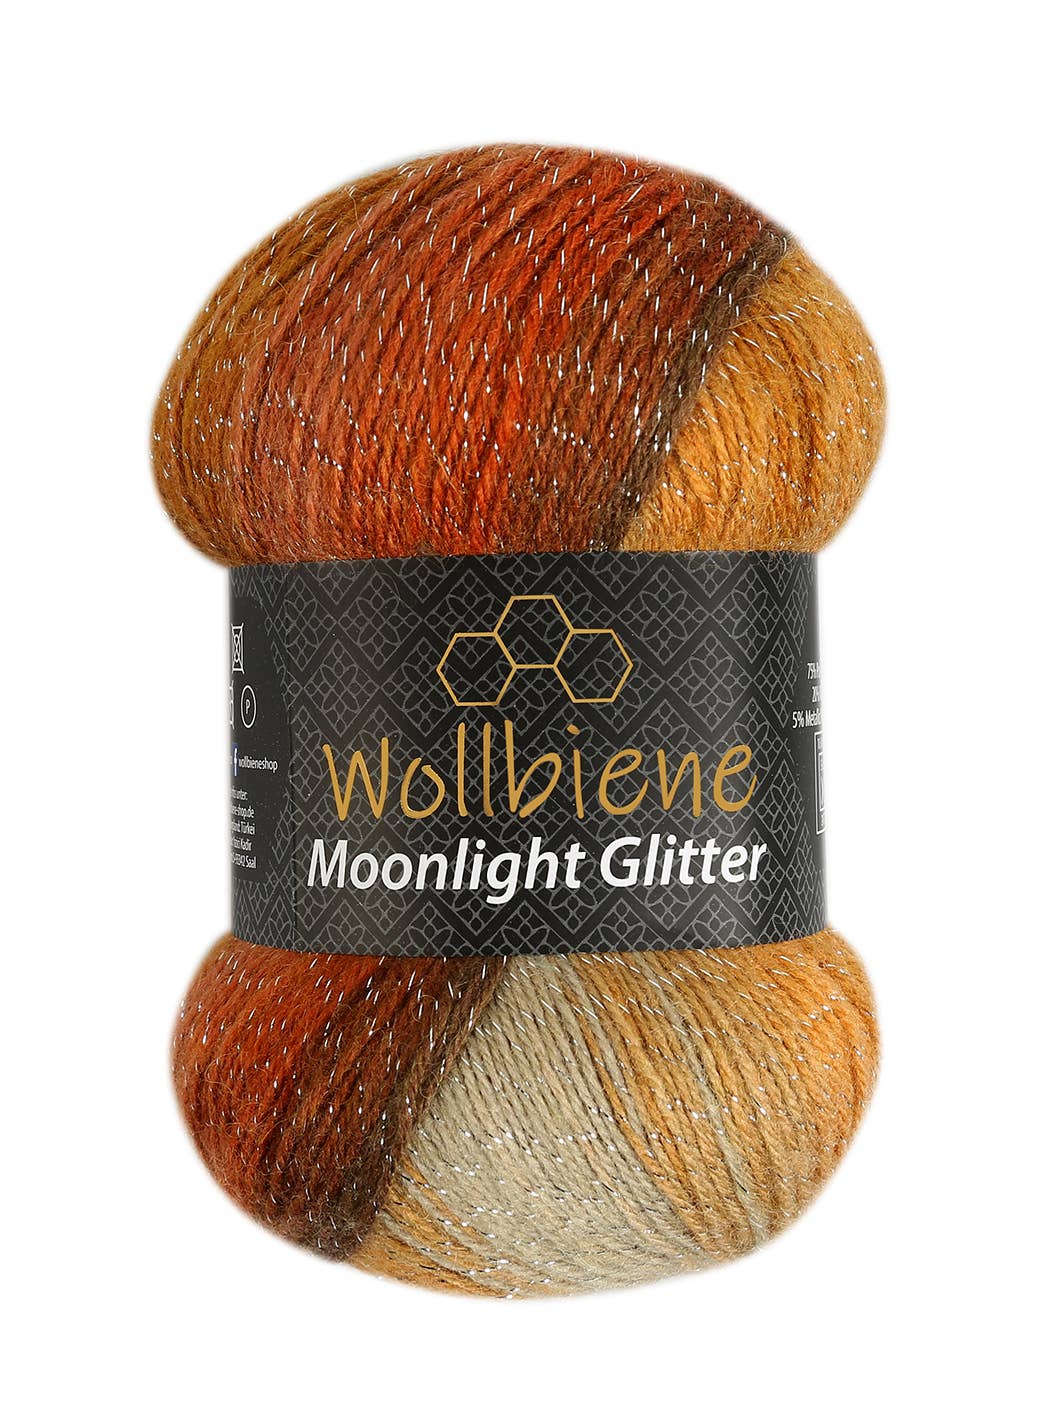 woolen bee moonlight glitter batik crochet knitting wool: 4000 orange yellow grey